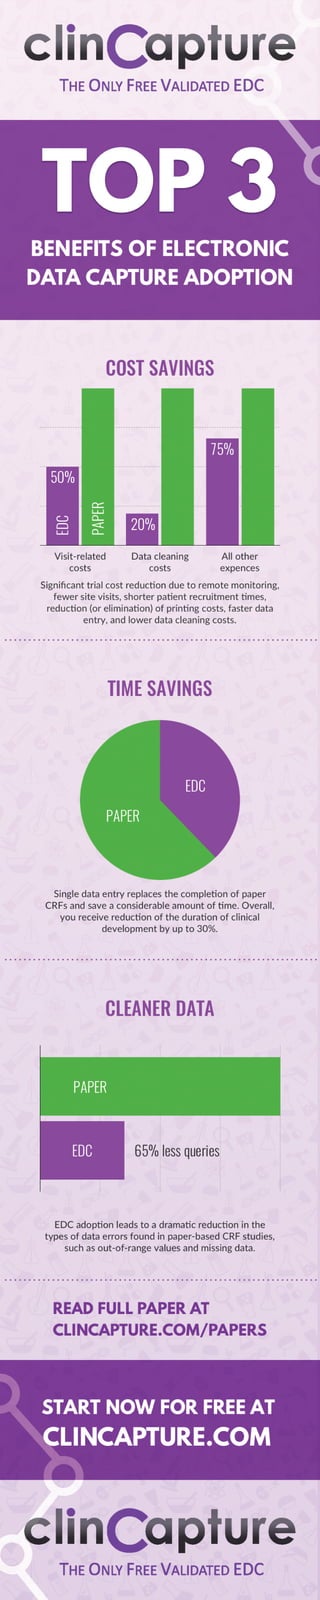 Infographic: Top 3 Benefits of EDC Adoption 